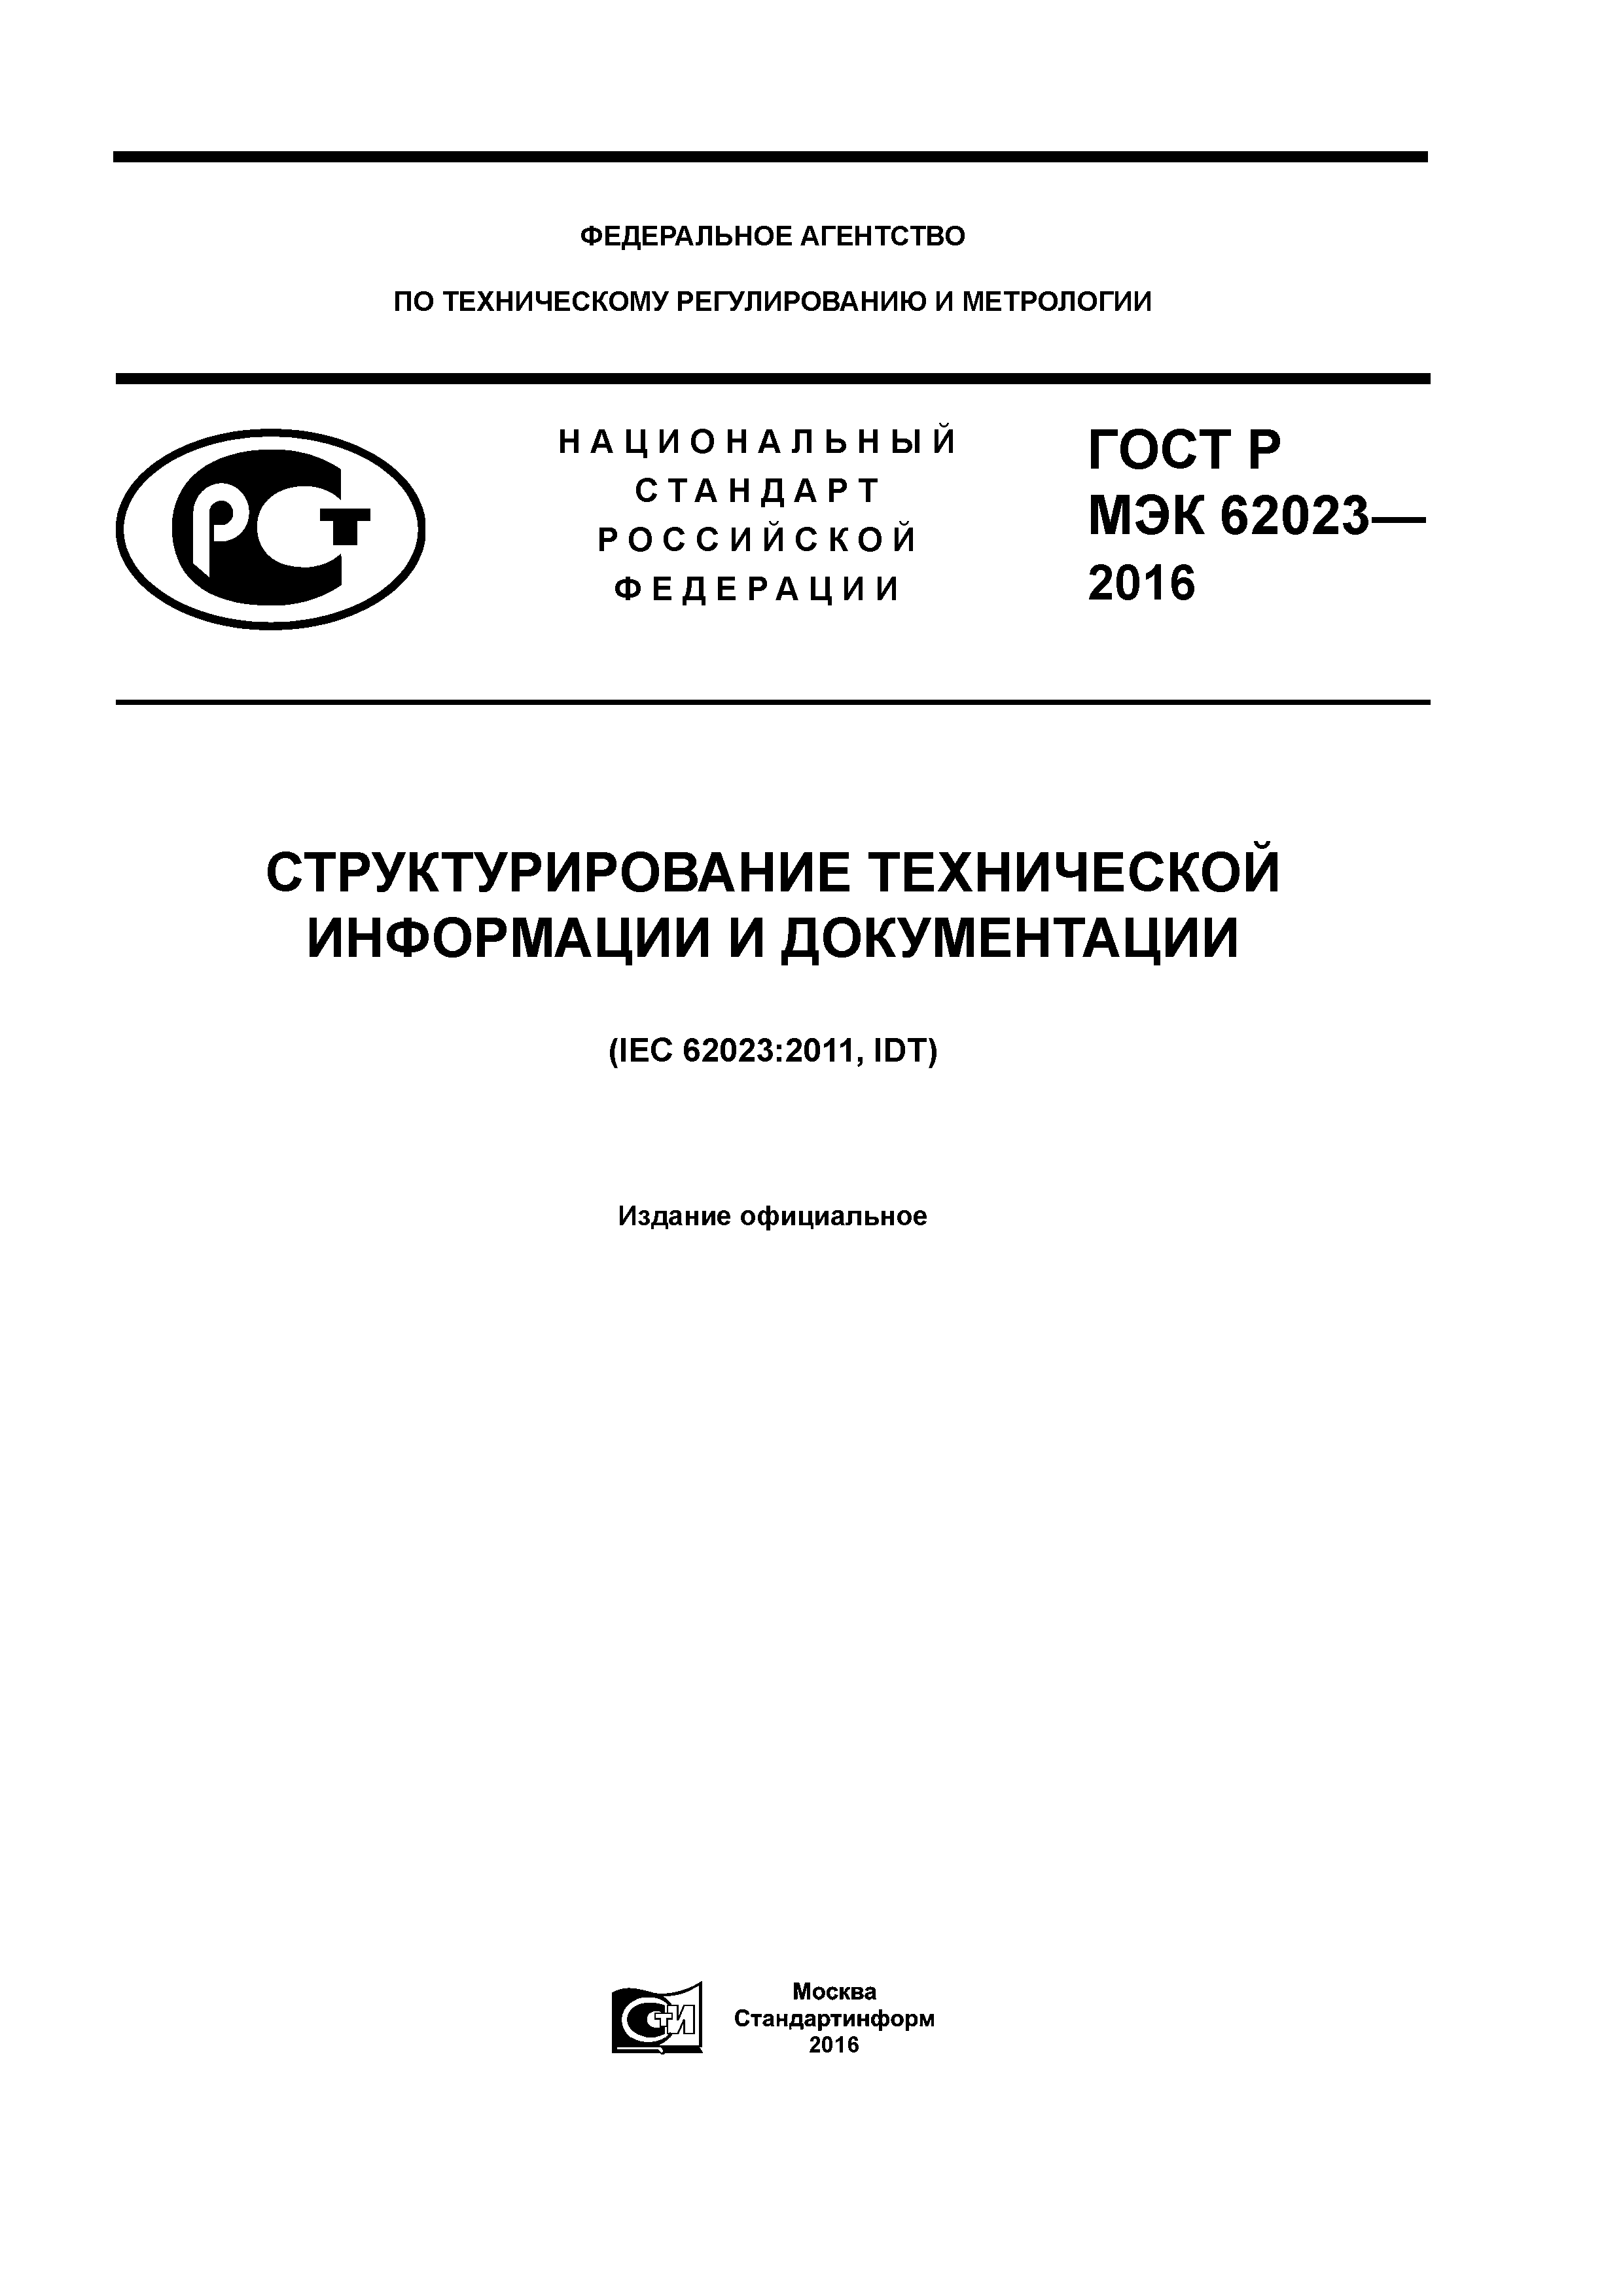 ГОСТ Р МЭК 62023-2016